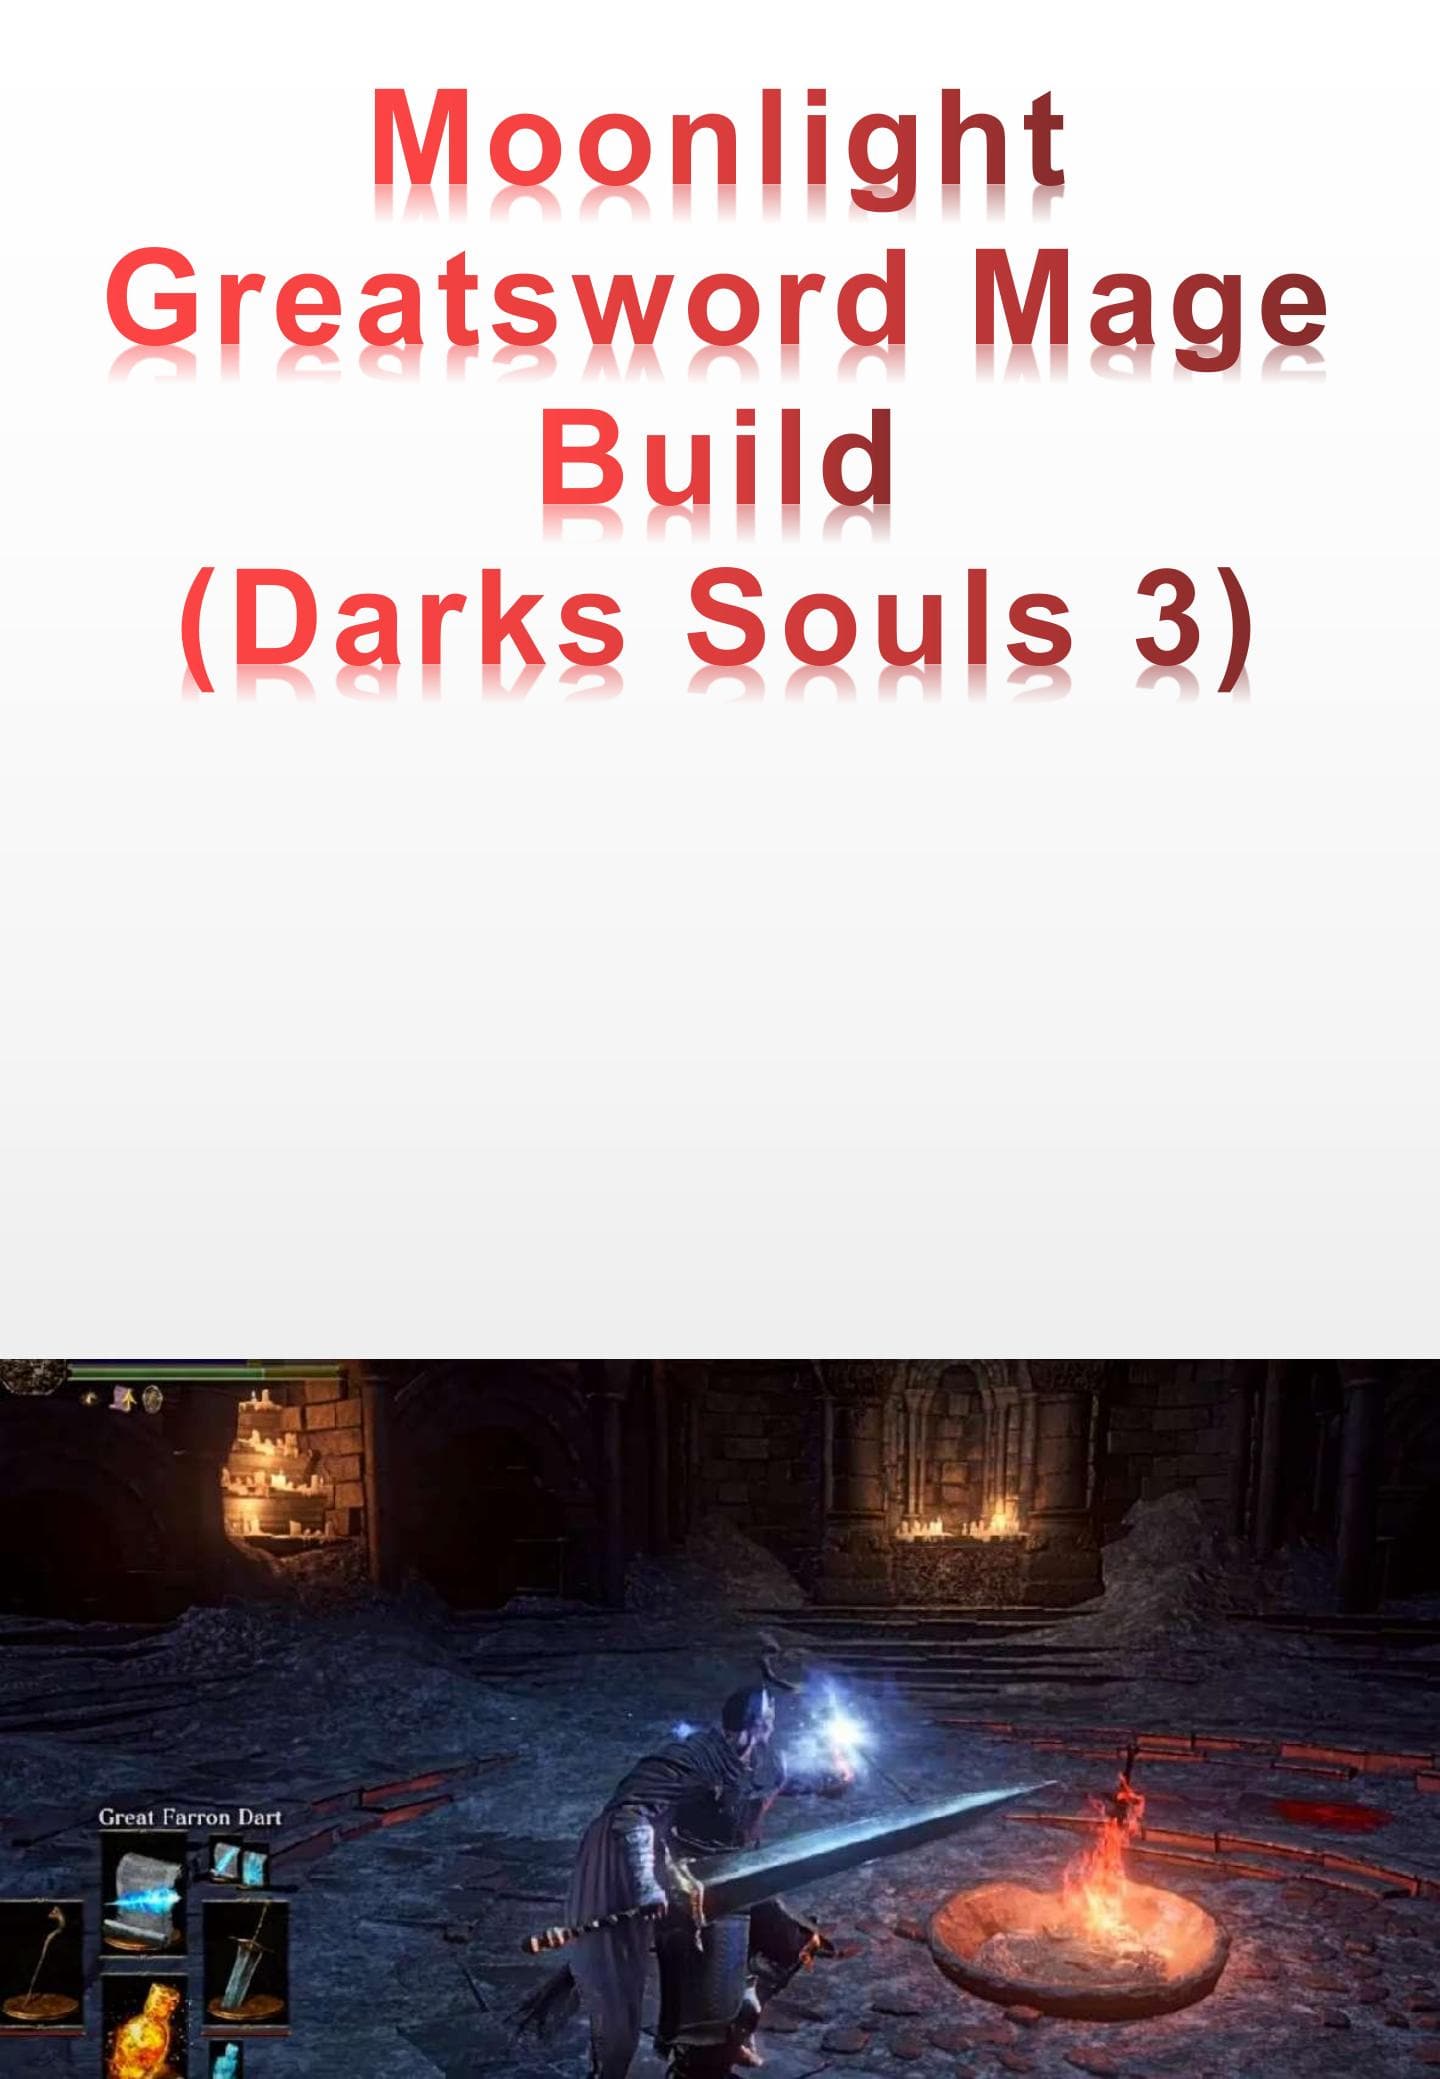 Moonlight Greatsword Mage Build - (Darks Souls 3)